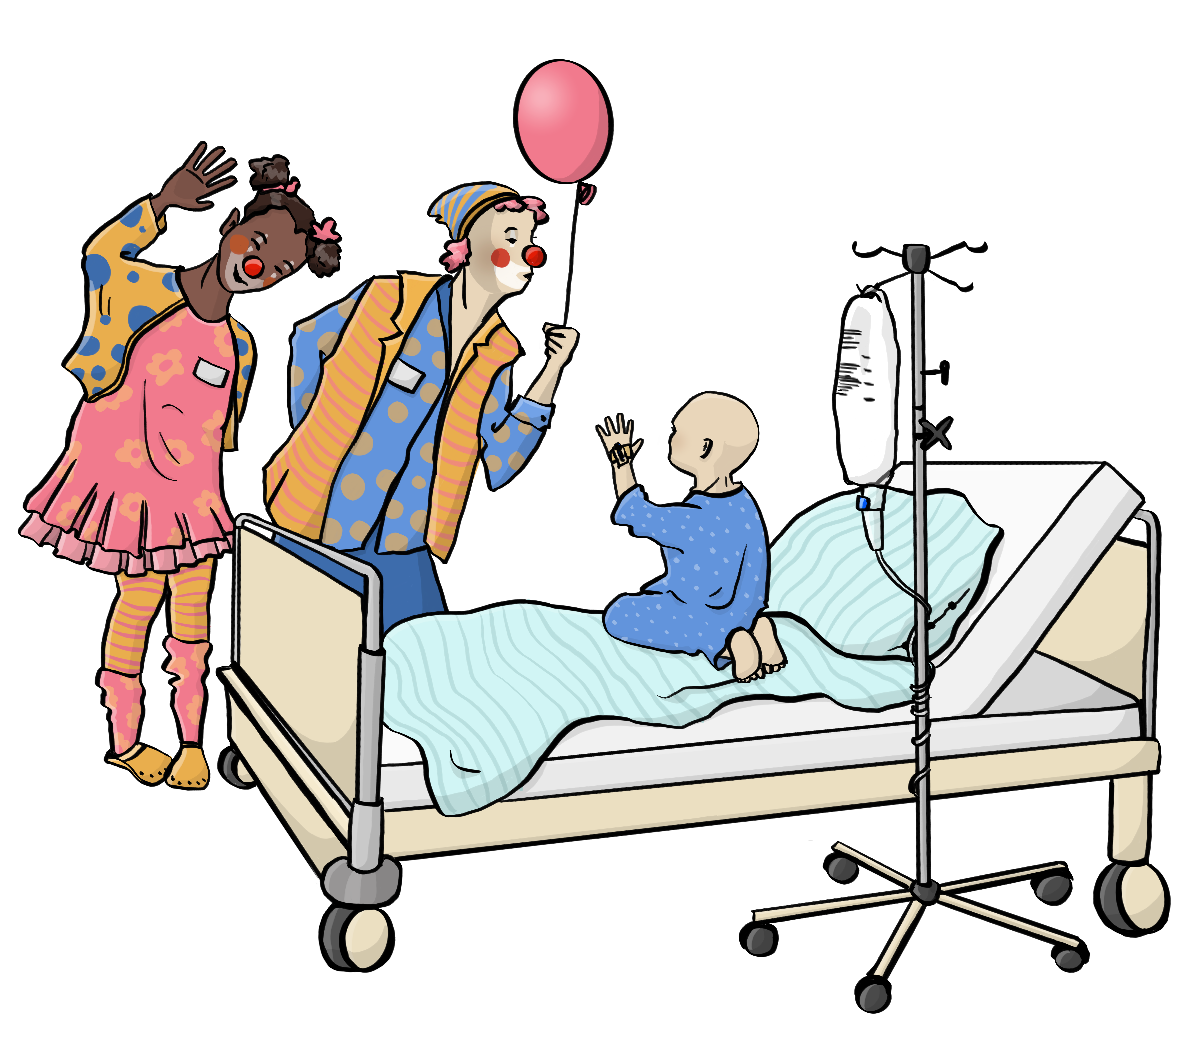 Ein Kleinkind ohne Haare kniet auf einem Krankenhausbett. Neben dem Bett stehen zwei Clowns. Der eine Clown gibt dem Kind einen Luftballon. 